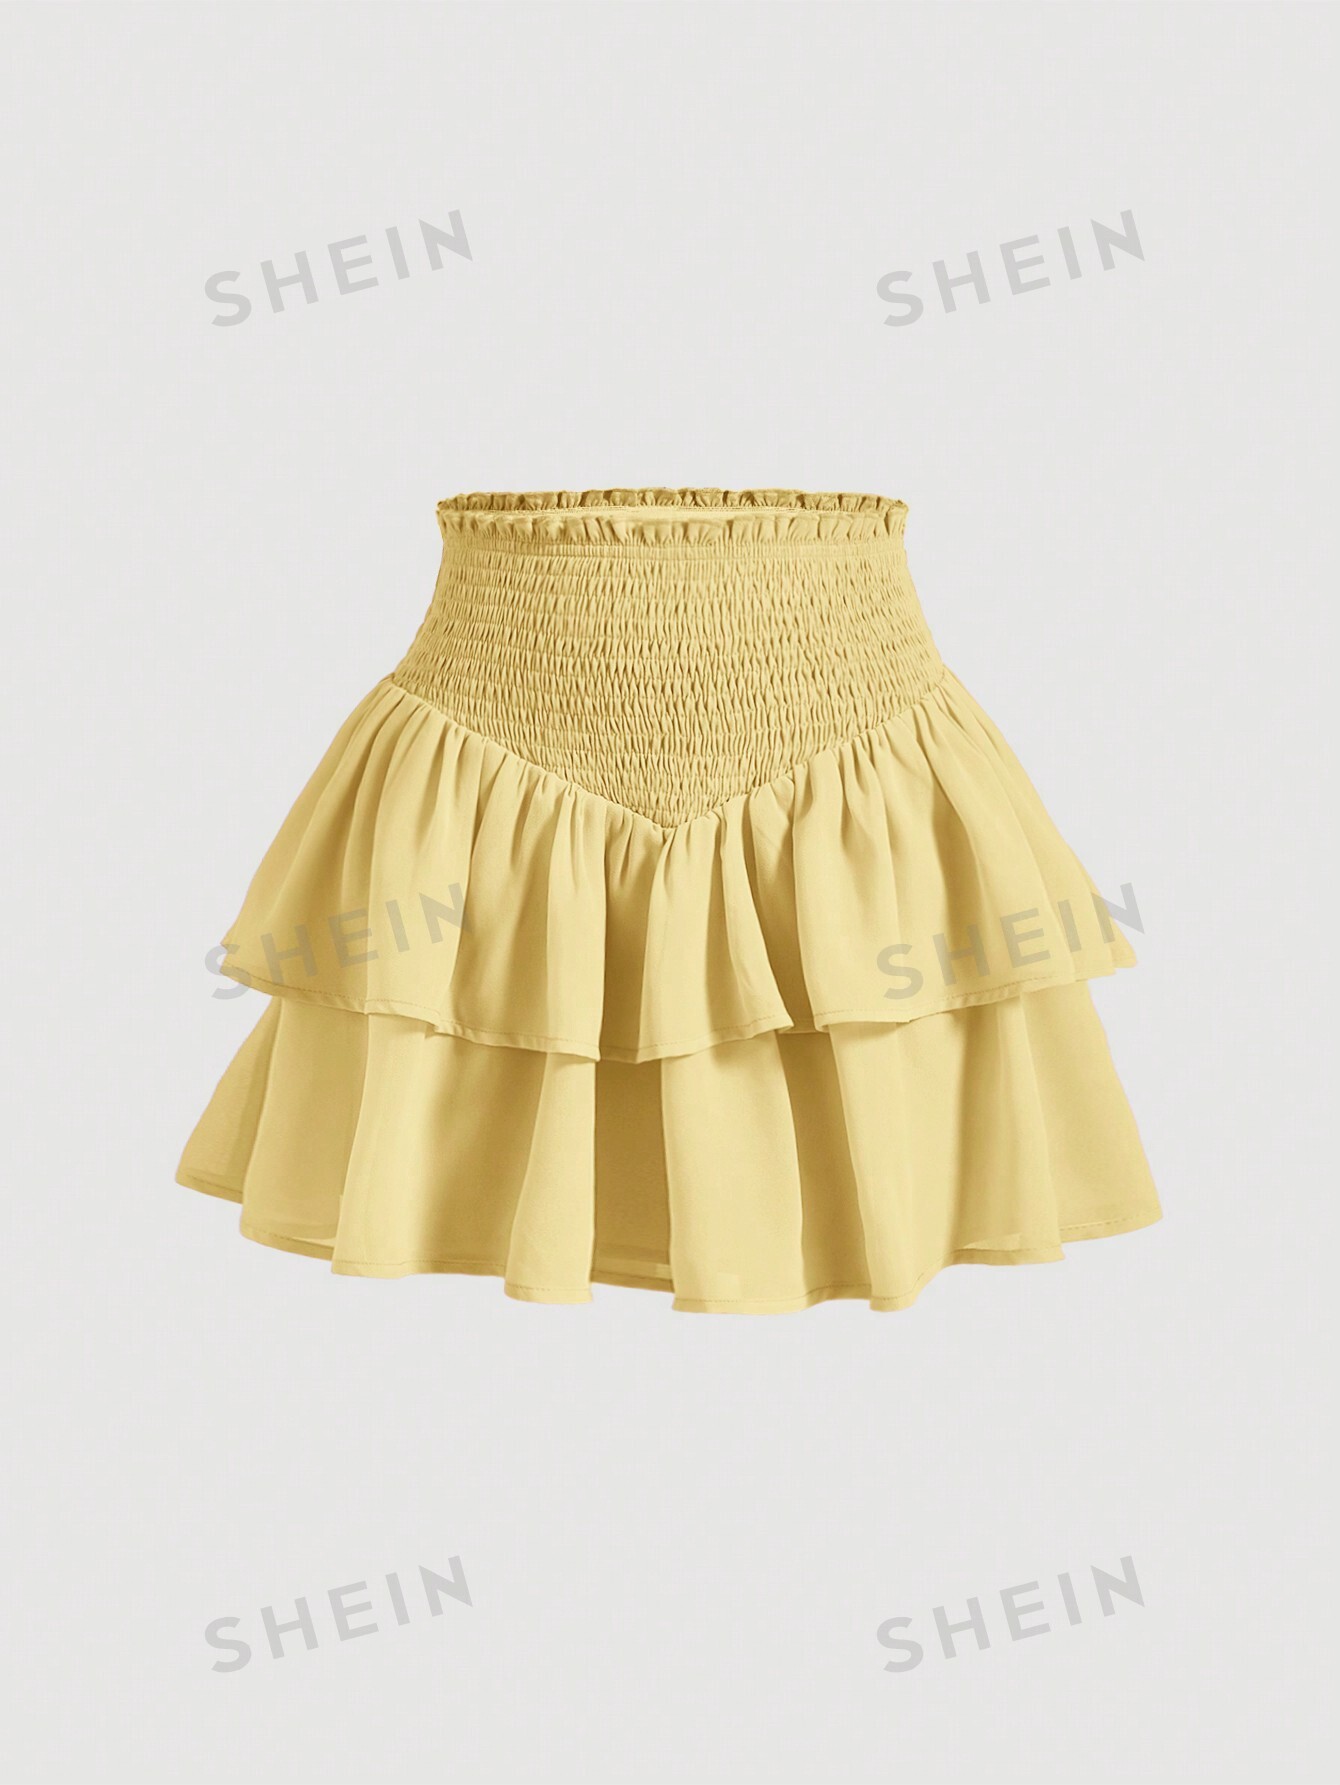 SHEIN MOD SHEIN MOD женская двухслойная мини-юбка с асимметричным подолом и рюшами и присборенной талией, желтый shein mod белая кружевная декорированная асимметричная юбка с рюшами по подолу белый